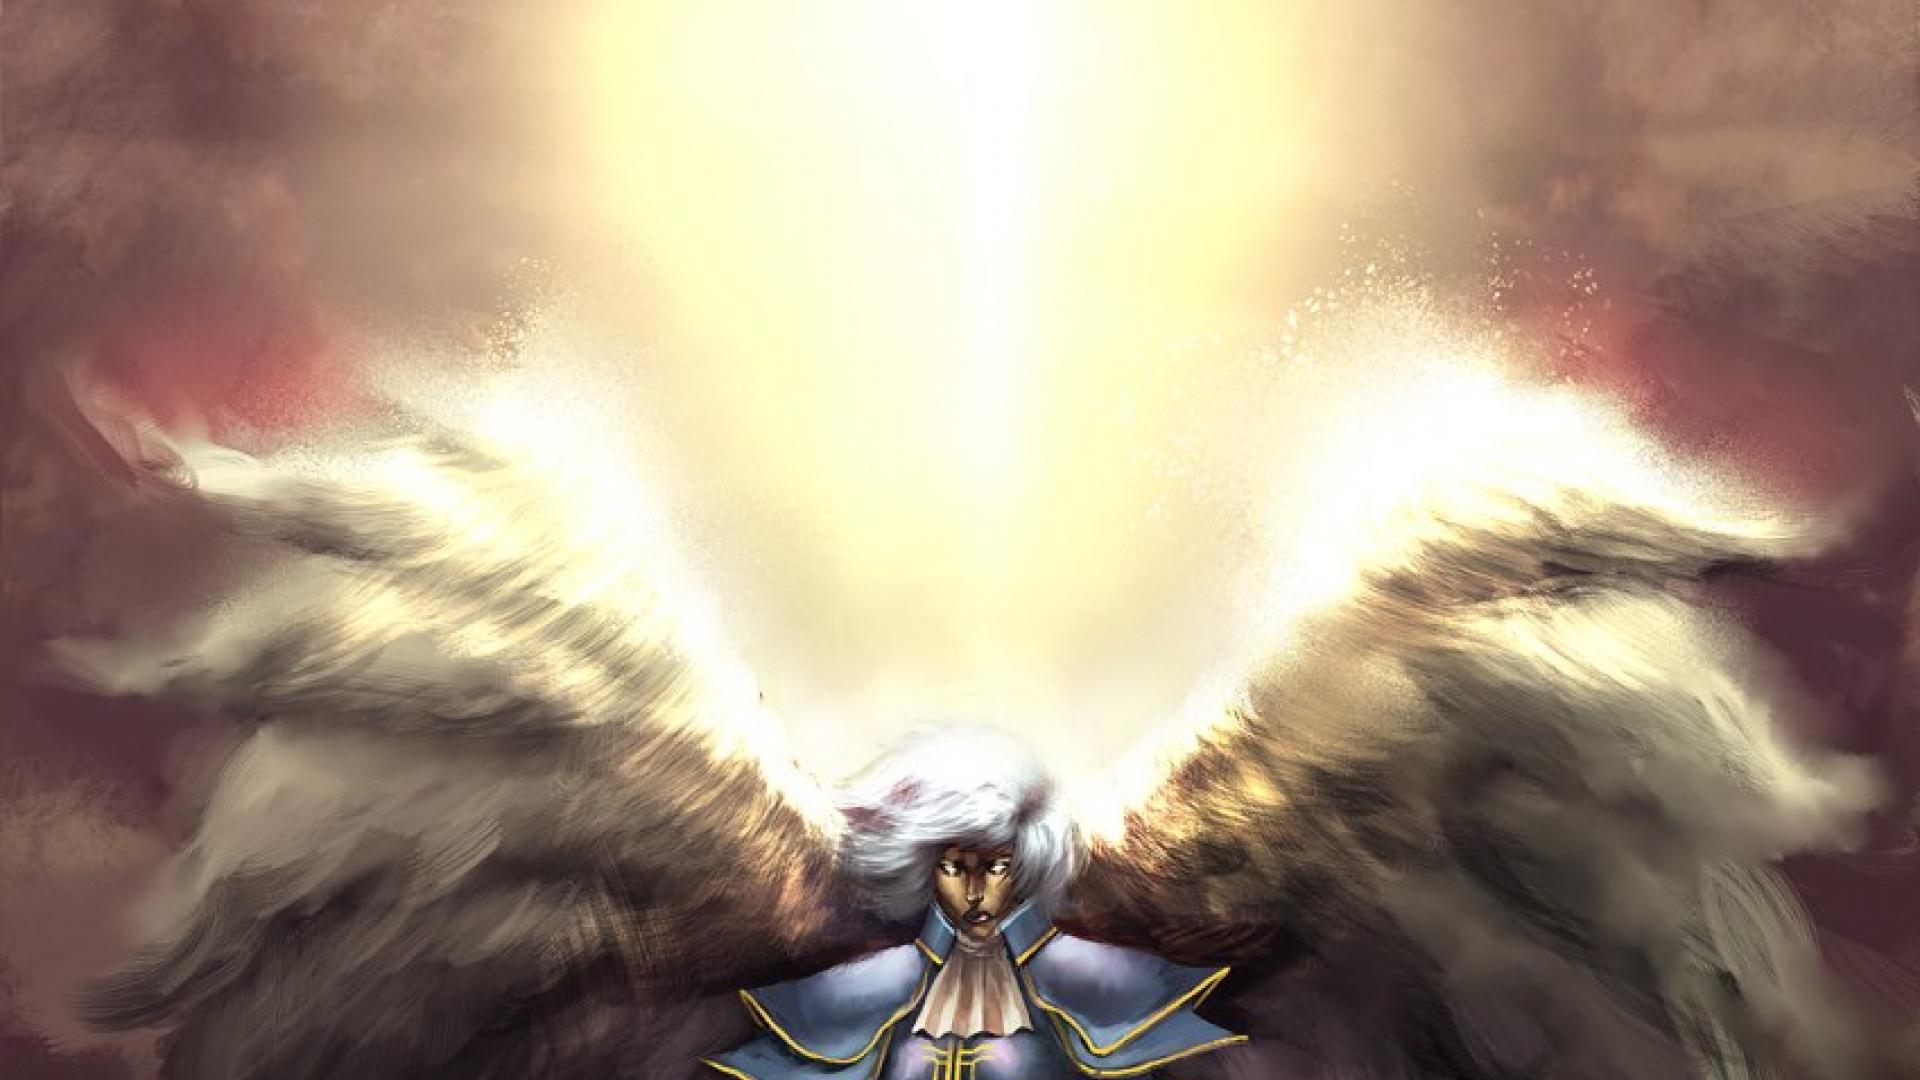 Archangel wings armor hd wallpaper - - HQ Desktop